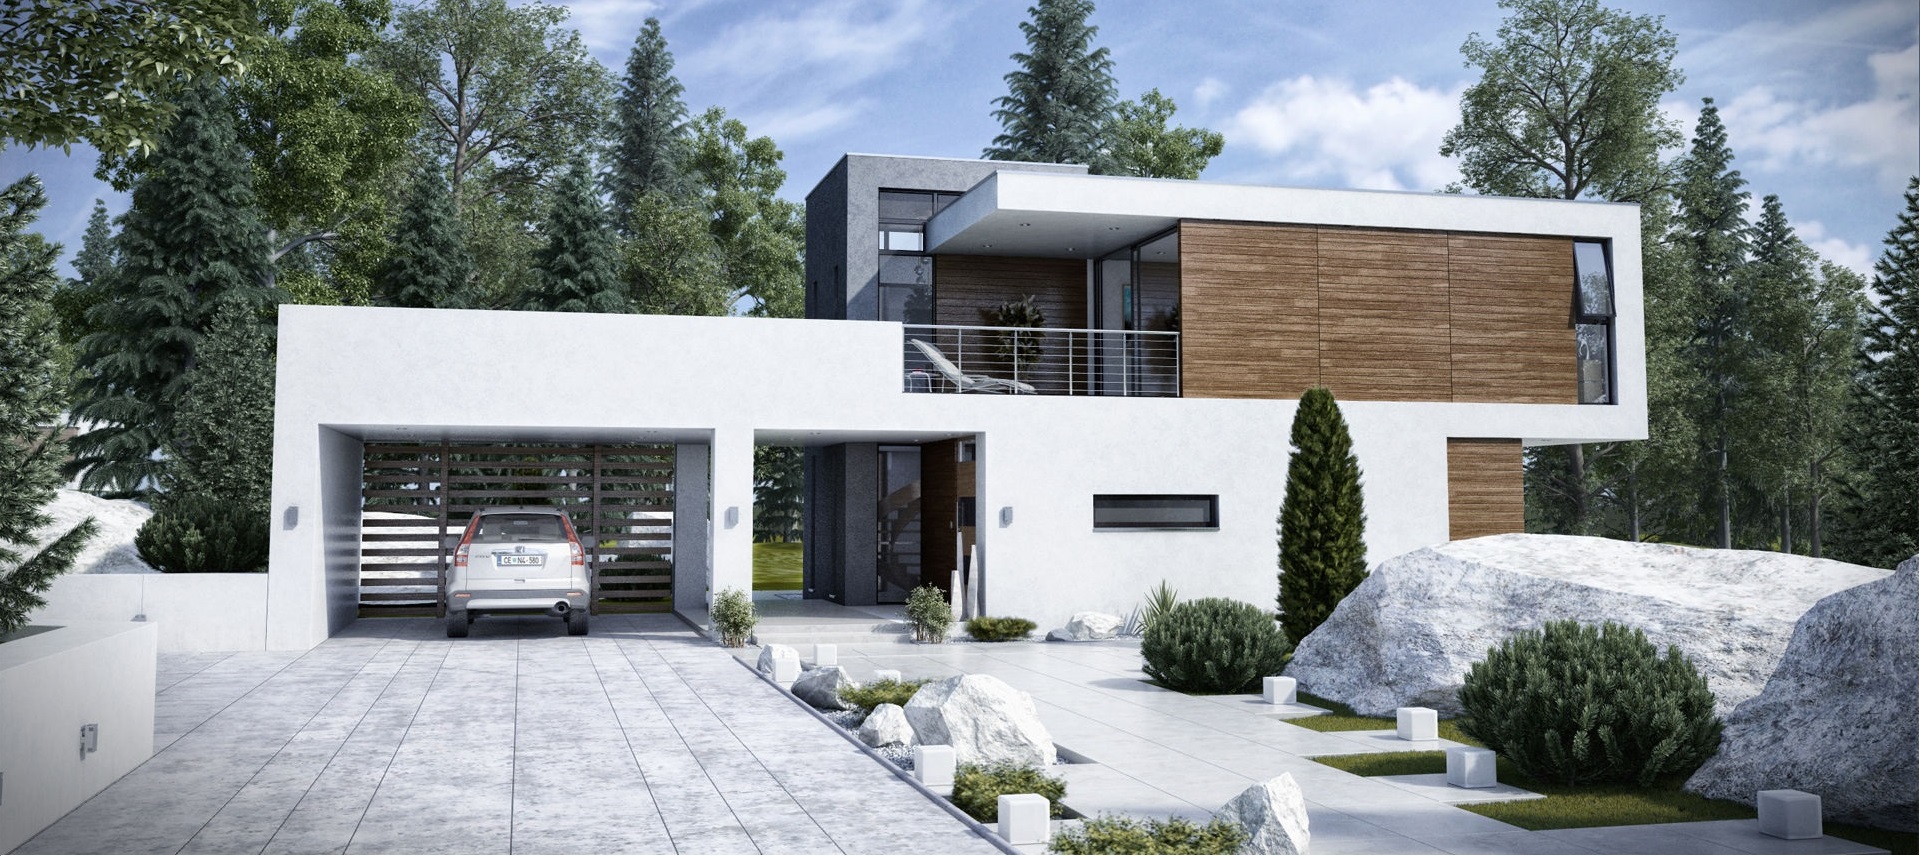 modern-house-exterior-design-l-aff054d6152055d2